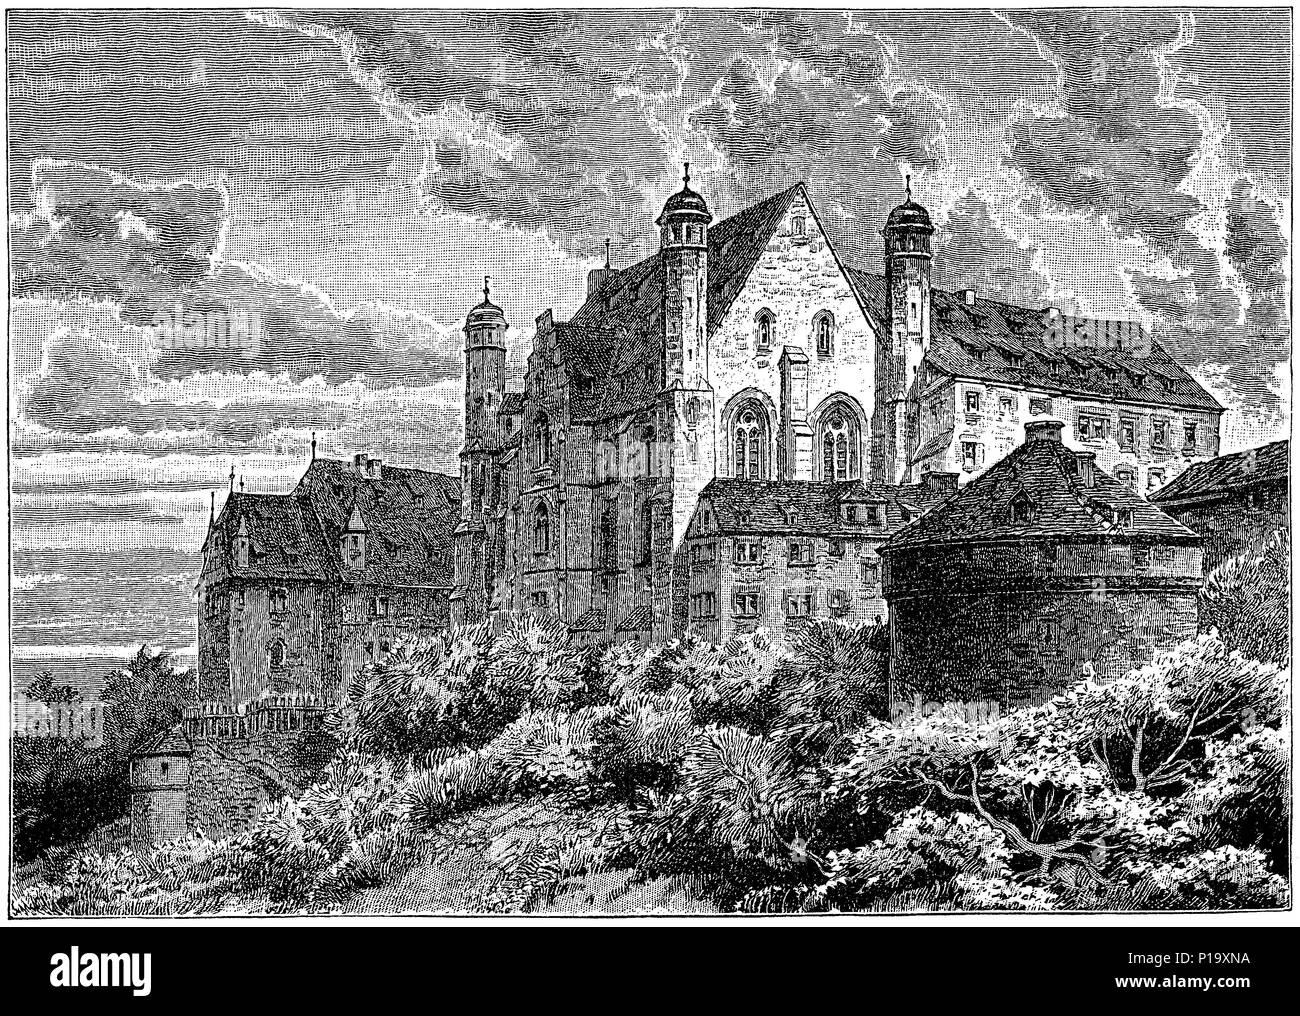 1883 Gravure de la Wartburg, vue depuis le Nord. La Wartburg est un château avec vue sur Eisenach en Thuringe, Allemagne. Banque D'Images